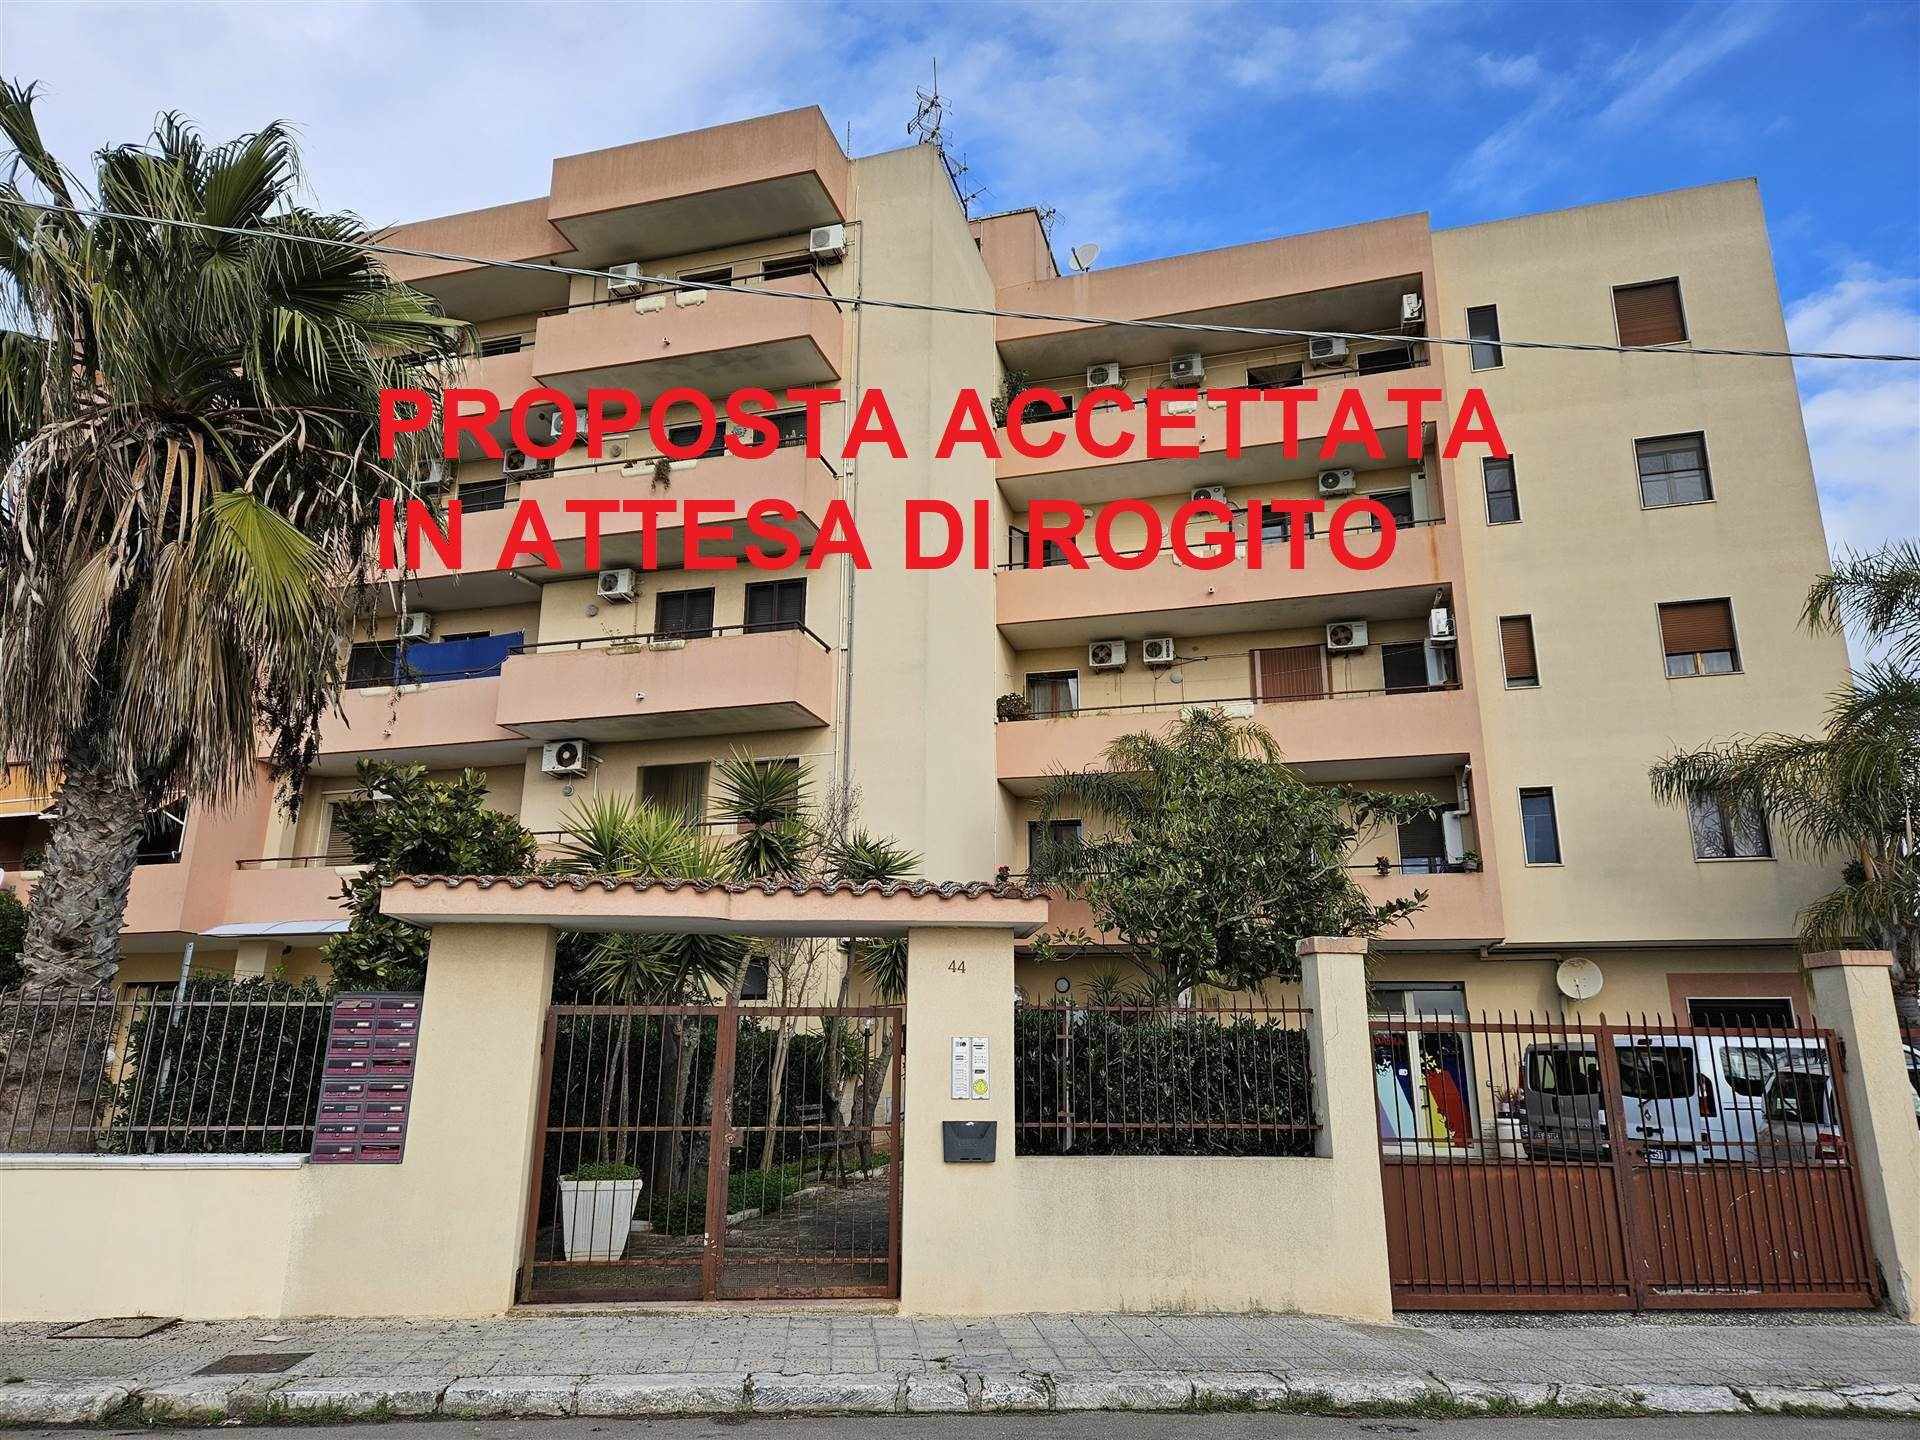 Appartamento in vendita a Mesagne, 6 locali, zona Località: SETA, prezzo € 73.000 | PortaleAgenzieImmobiliari.it